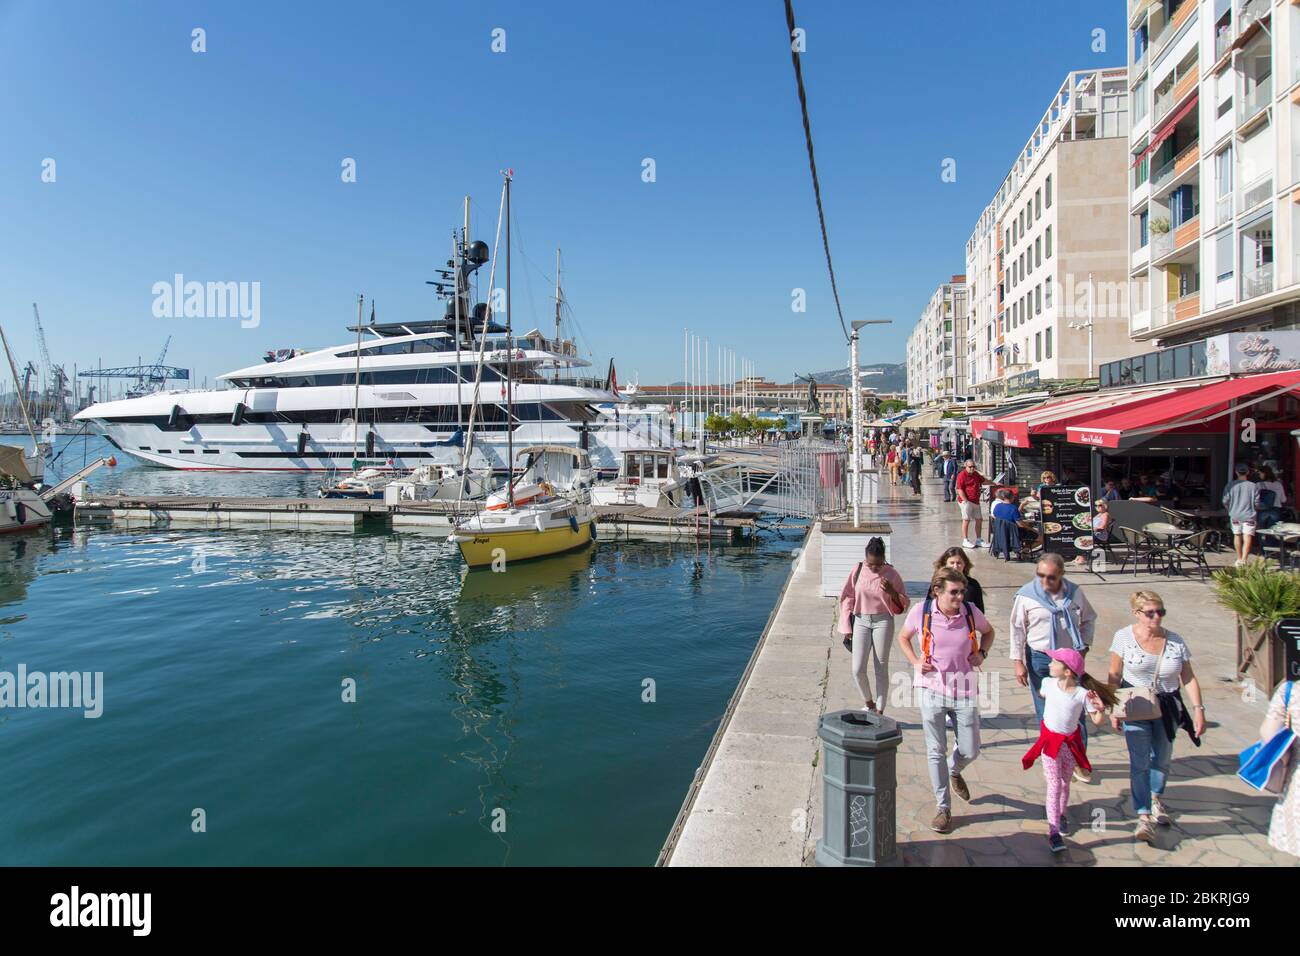 France, Var, Toulon, restaurant and boats on the port, avenue de la Republique Stock Photo